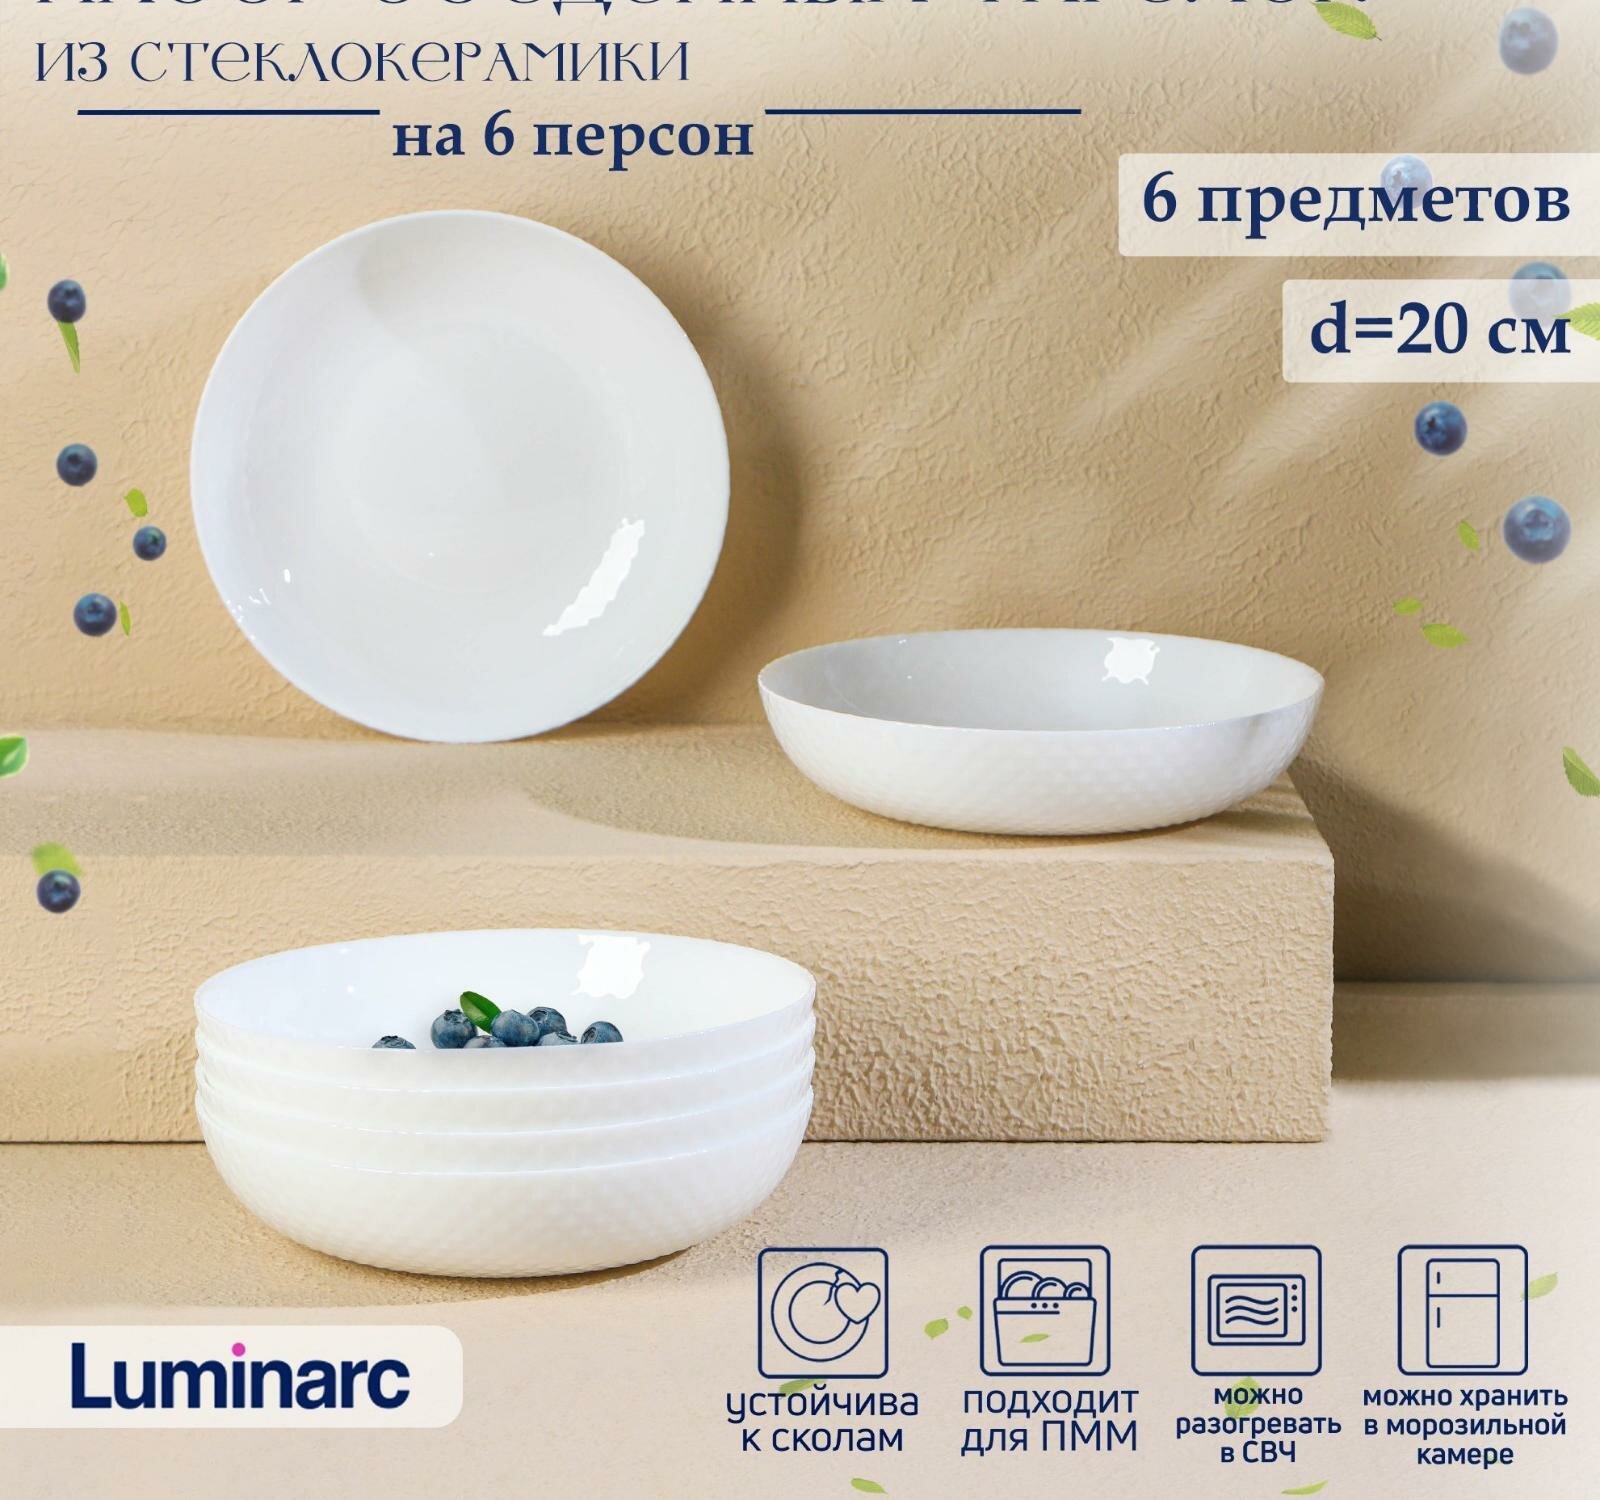 Набор обеденных тарелок Luminarc DIWALI SHELLS, 800 мл, d20 см, стеклокерамика, 6 шт, цвет белый